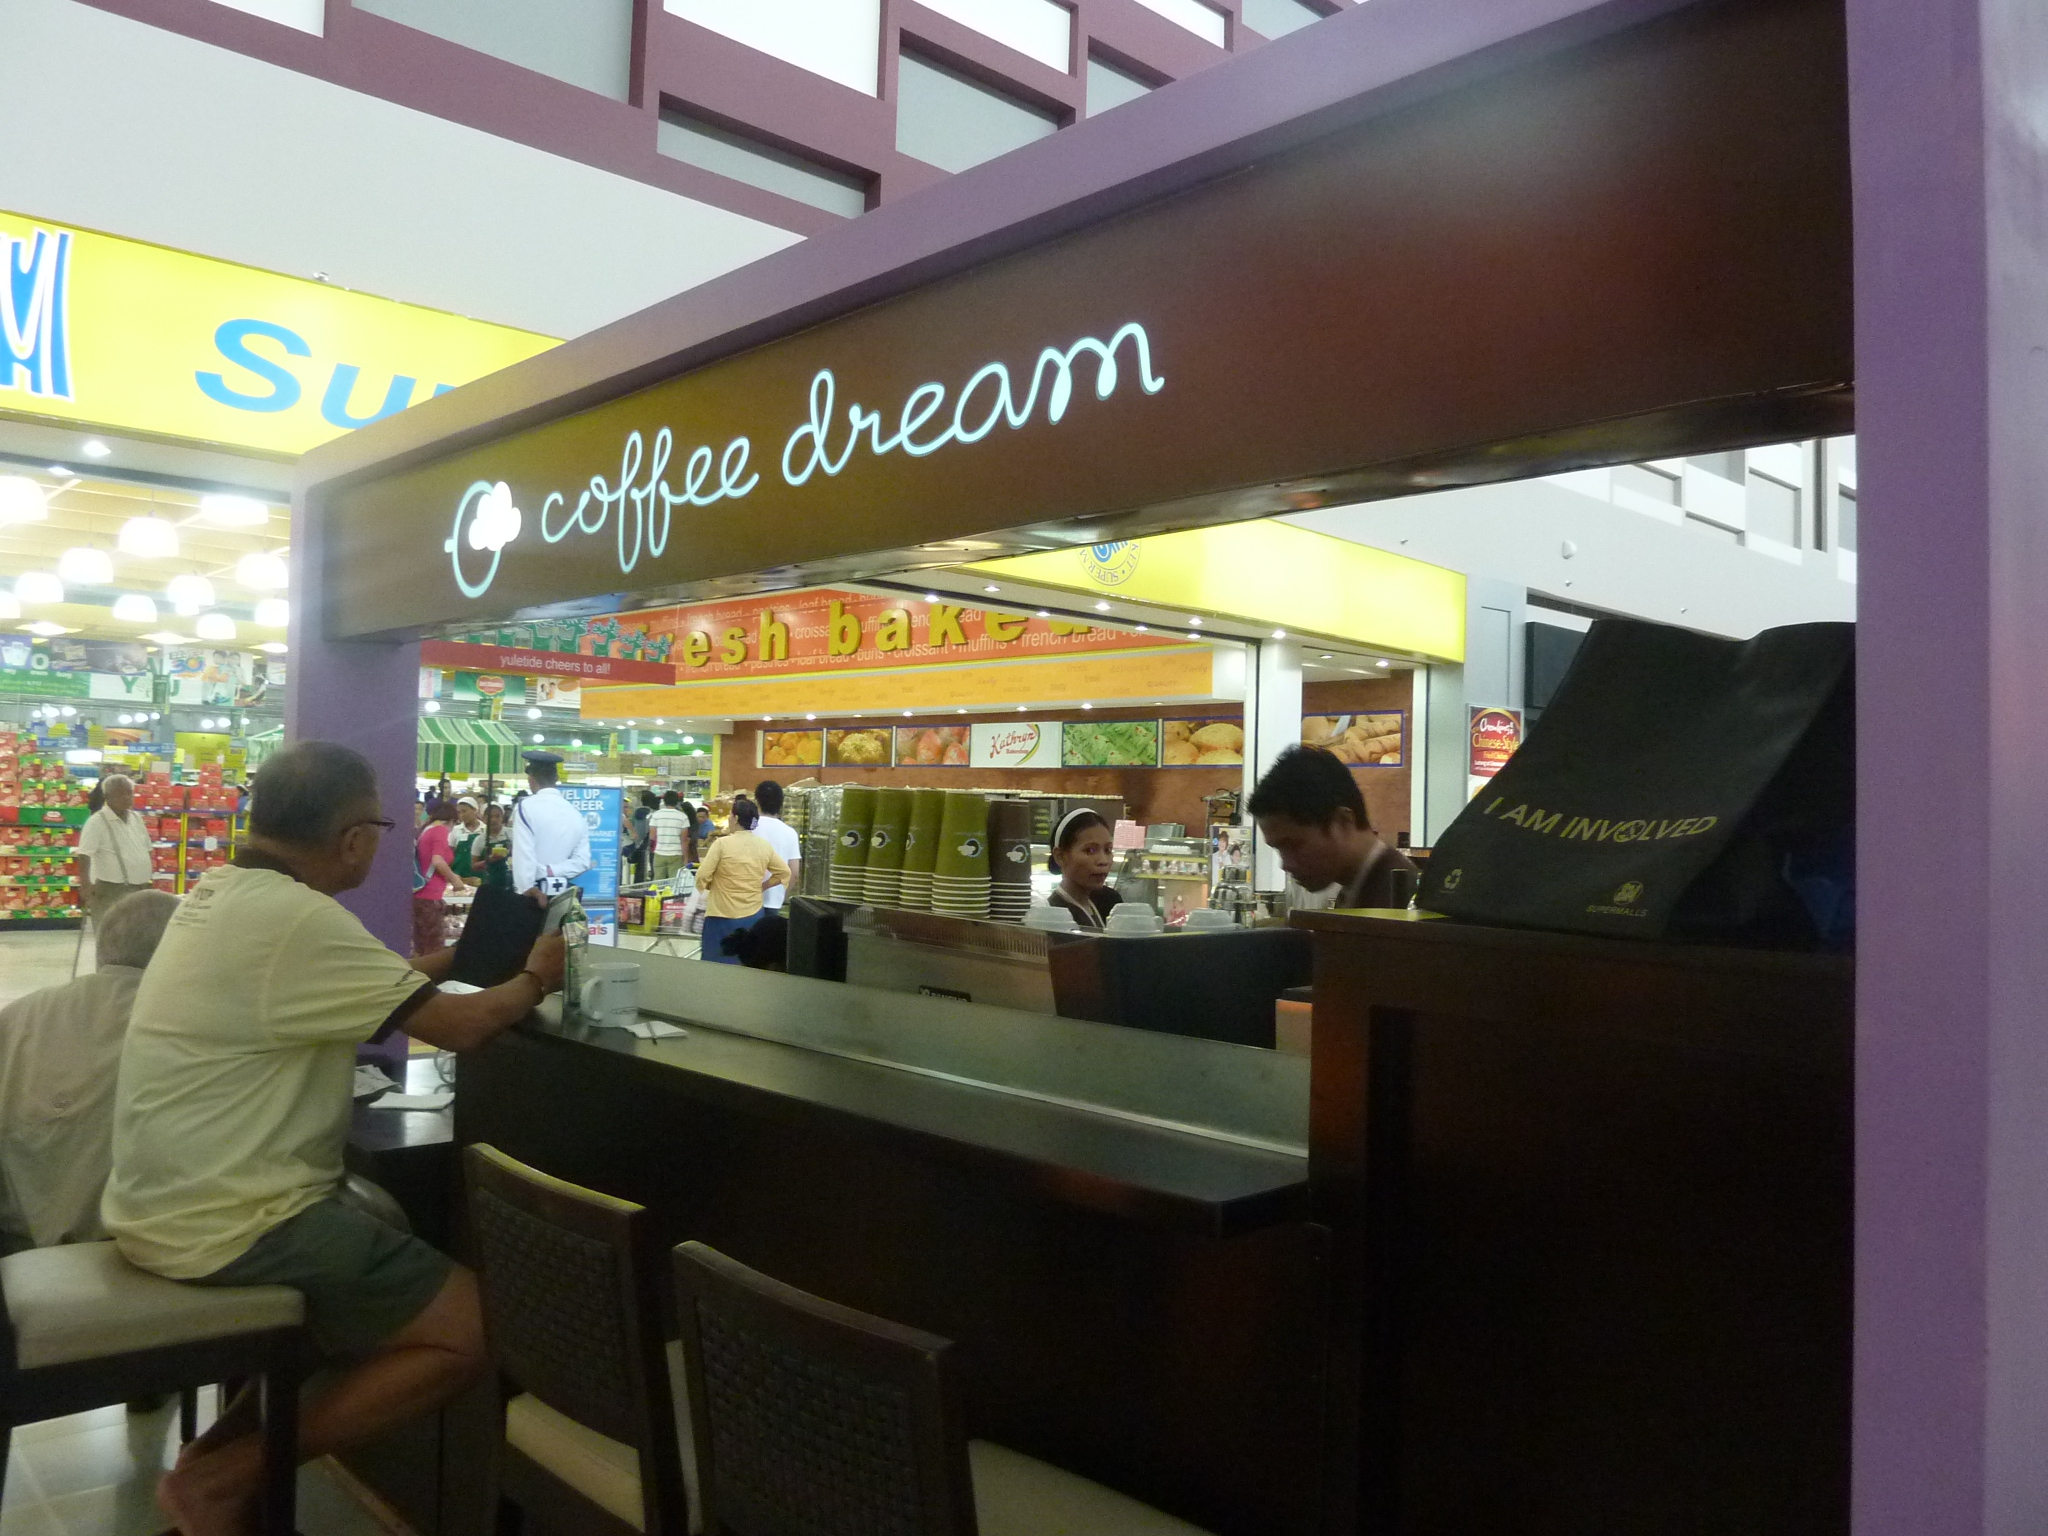 Coffee Dream SM Cagayan de Oro is coffee heaven